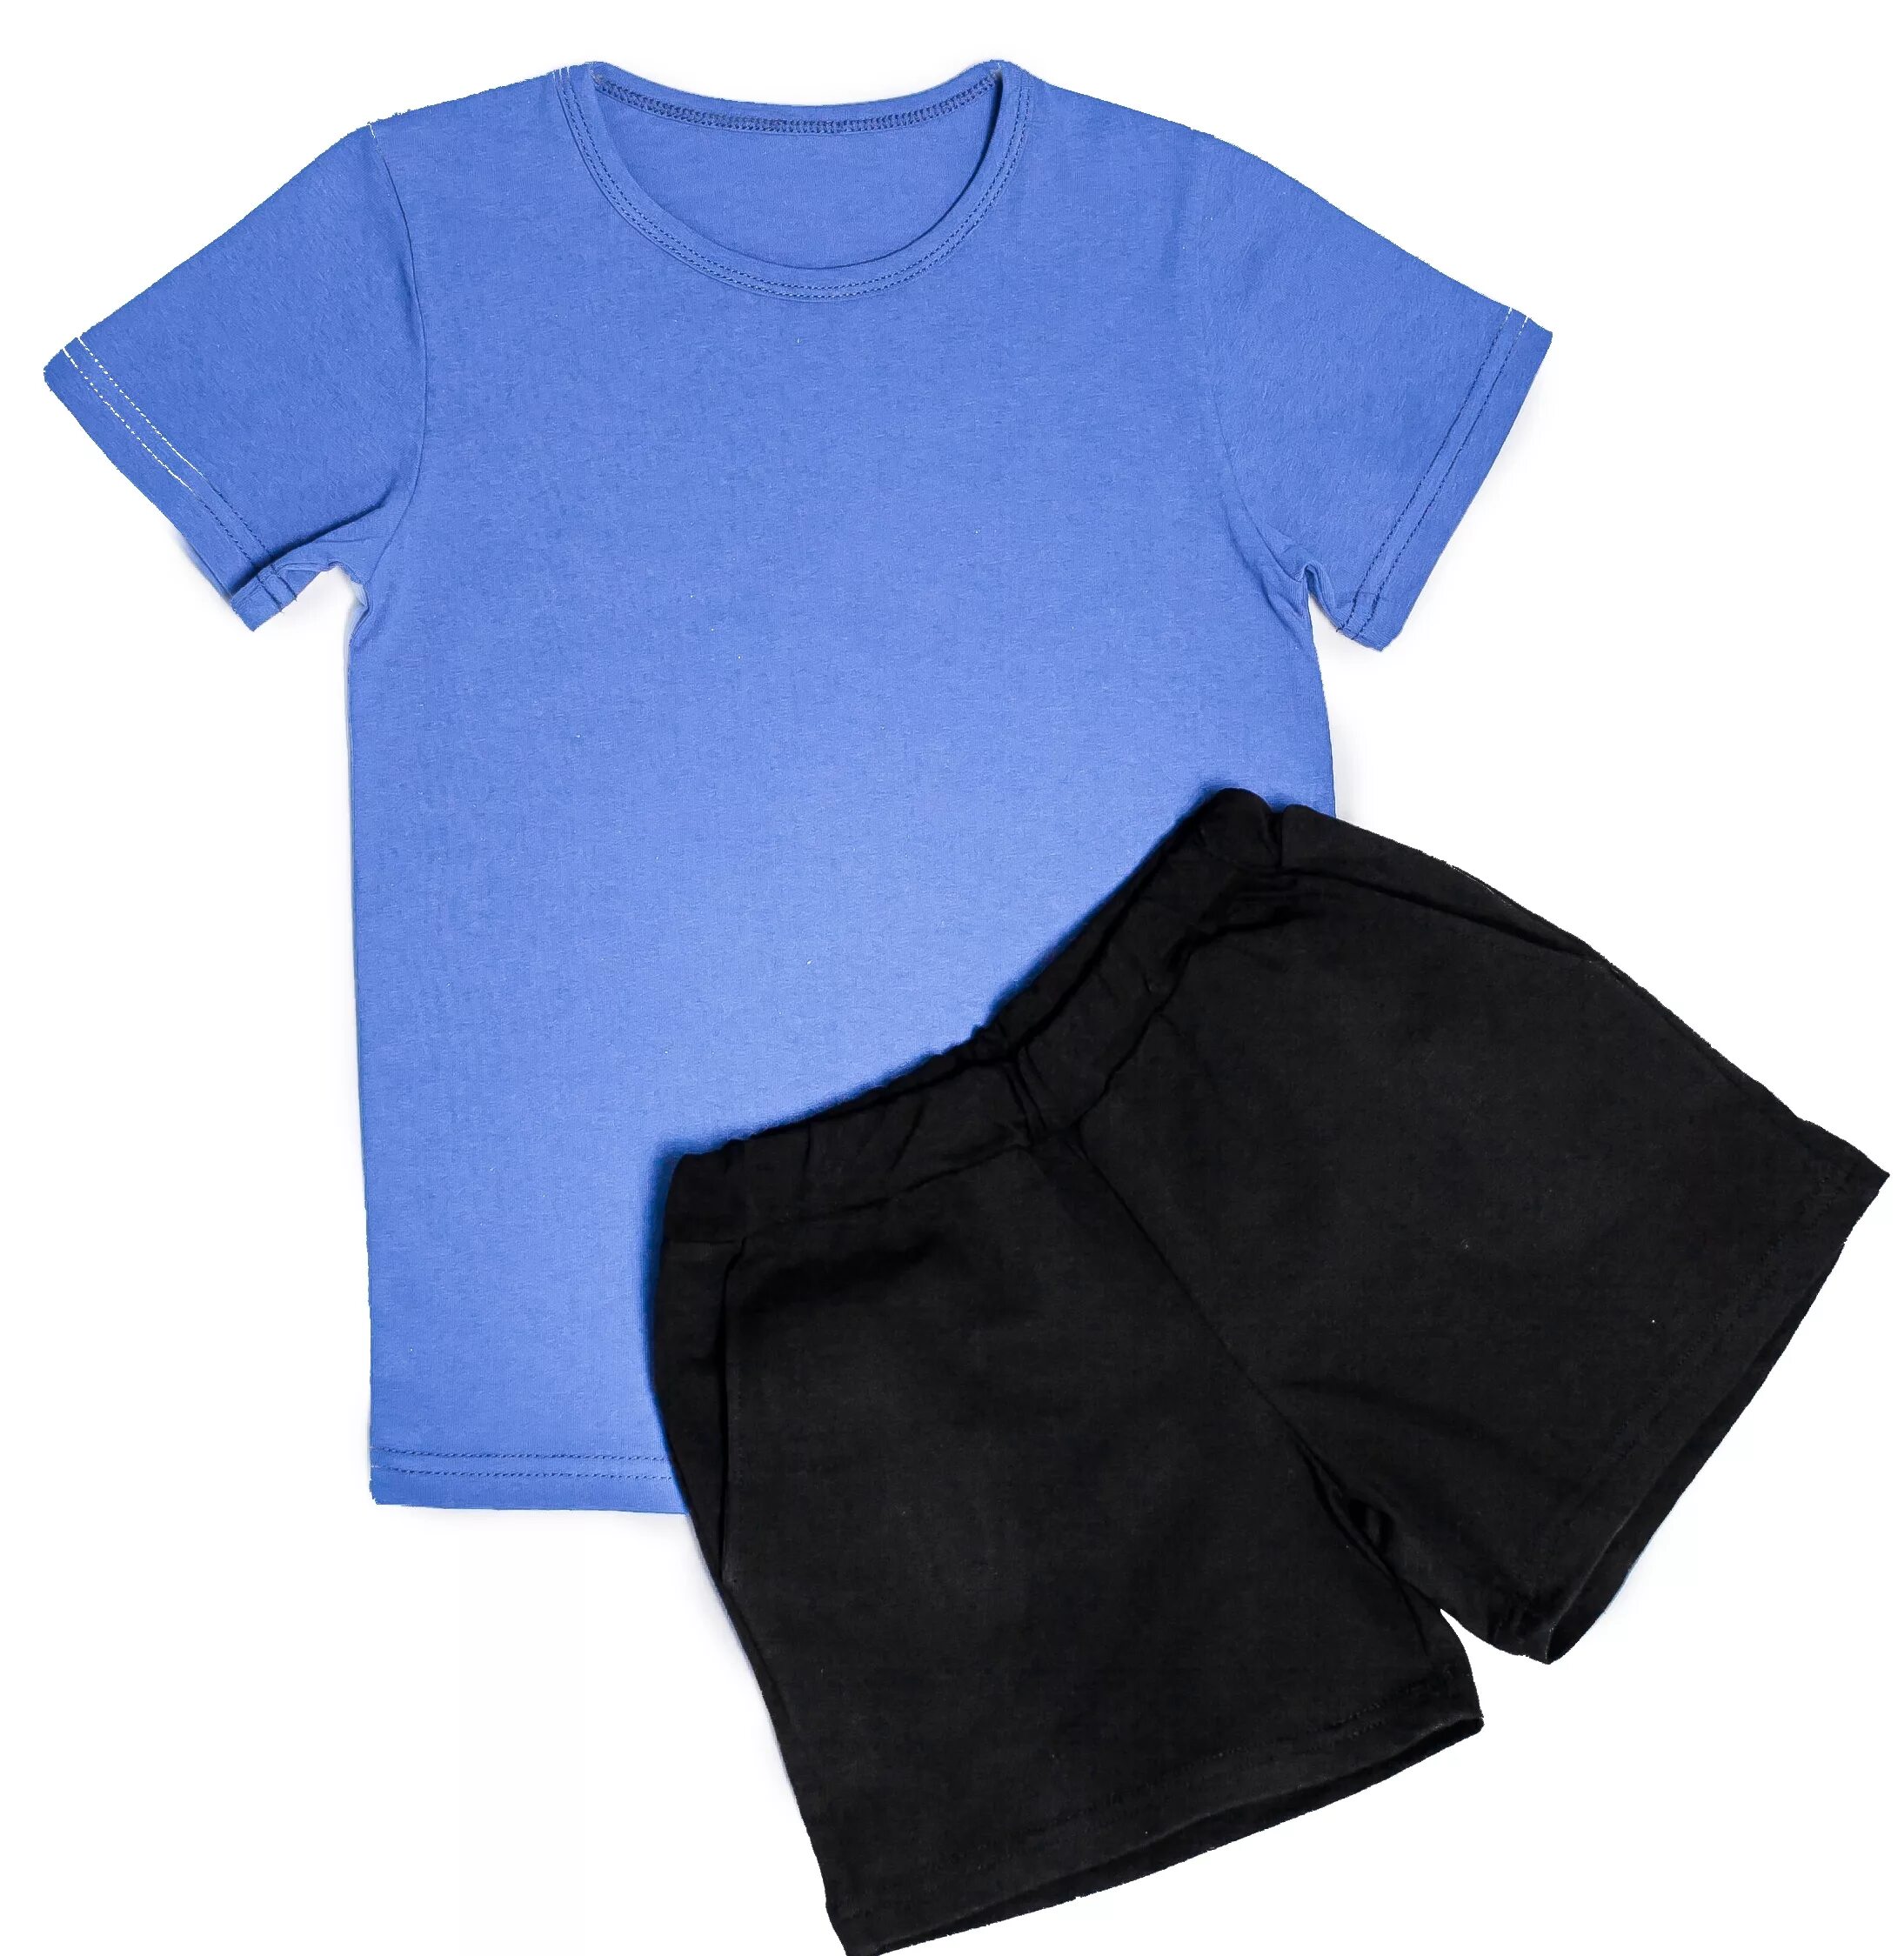 Детские шорты для физкультуры. Чёрные шорты для мальчика на физкультуру. Синяя футболка черные шорты. Детские спортивные шорты и футболка.